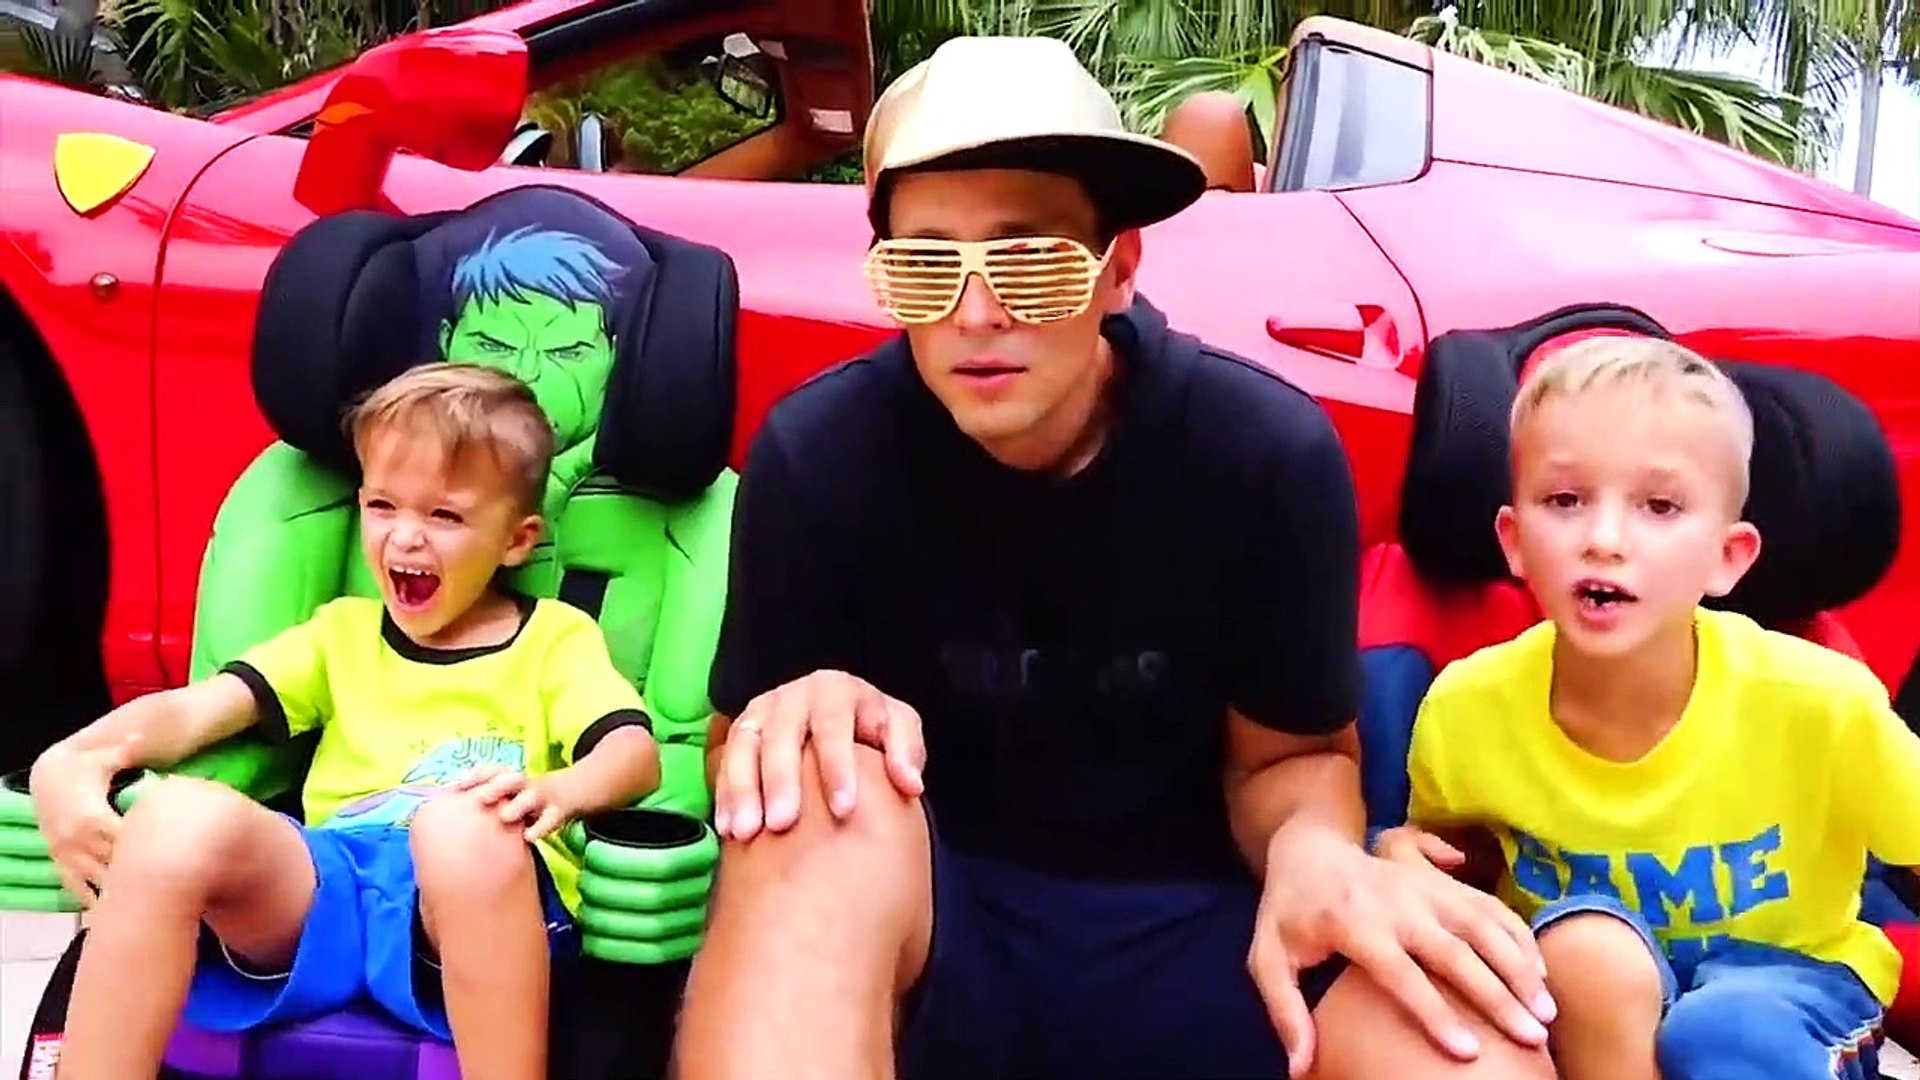 نحن في السيارة - قصة الأطفال مع فلاد ونيكيتا - فيديو Dailymotion